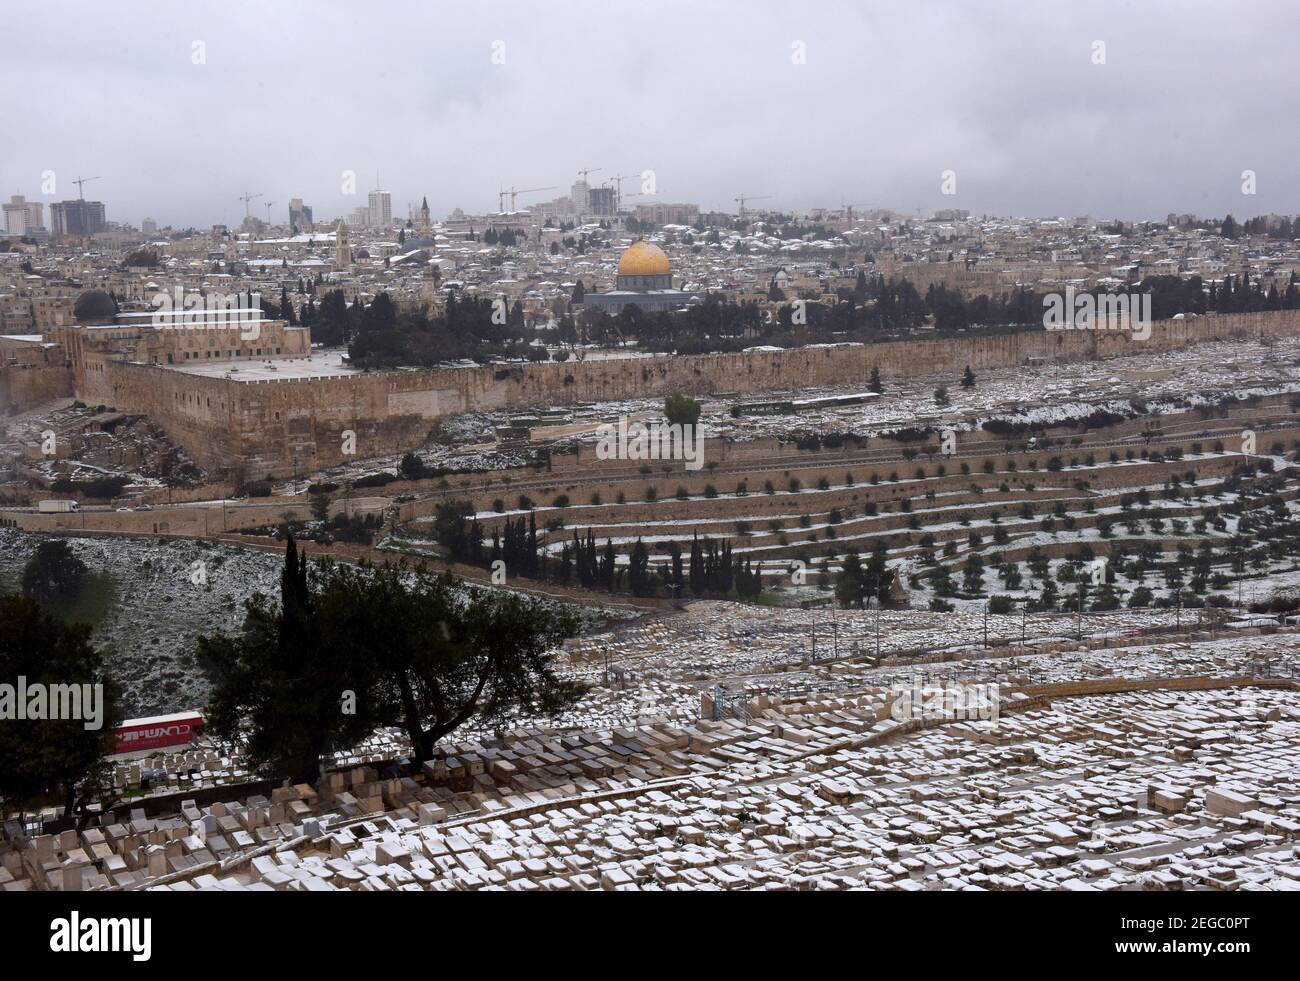 Jerusalem, Israel. Februar 2021, 18th. Schnee bedeckt den jüdischen Friedhof auf dem Ölberg mit Blick auf den Felsendom auf dem Al Aqsa-Moschee-Gelände in der Altstadt von Jerusalem, am Donnerstag, den 18. Februar 2021. Foto von Debbie Hill/UPI Kredit: UPI/Alamy Live Nachrichten Stockfoto